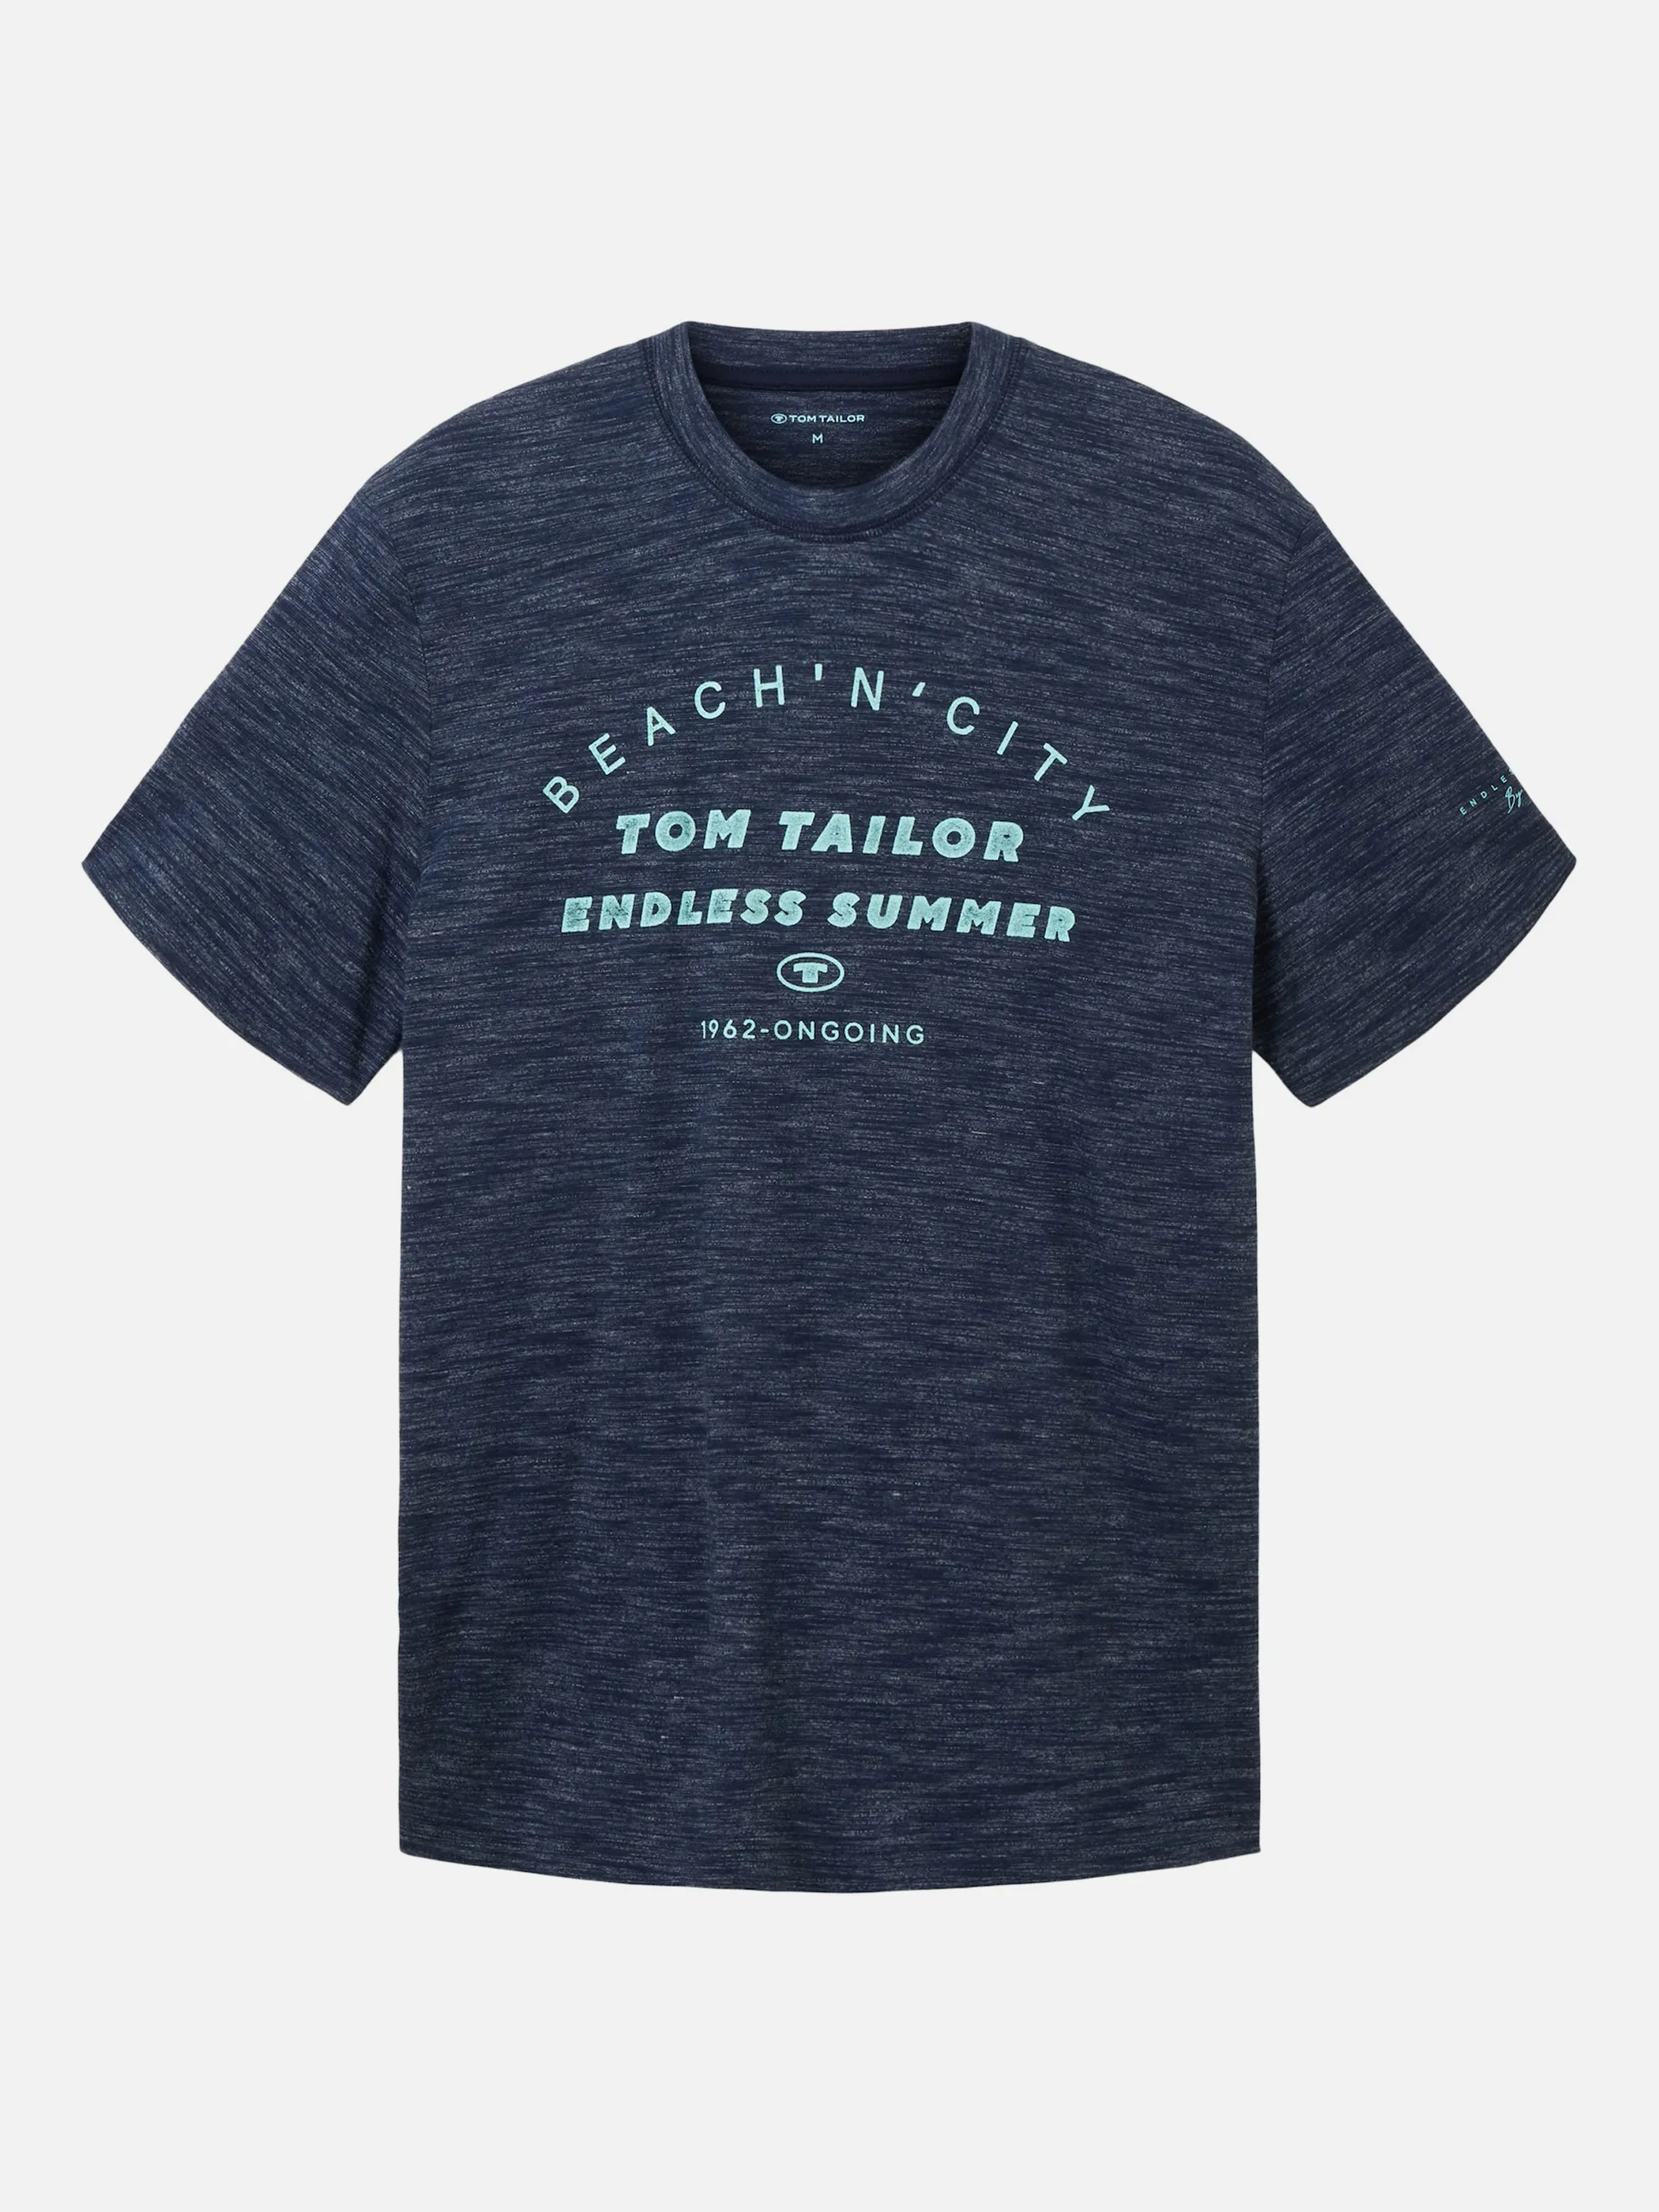 Tom Tailor 1036418 print t-shirt Blau 880562 32033 1